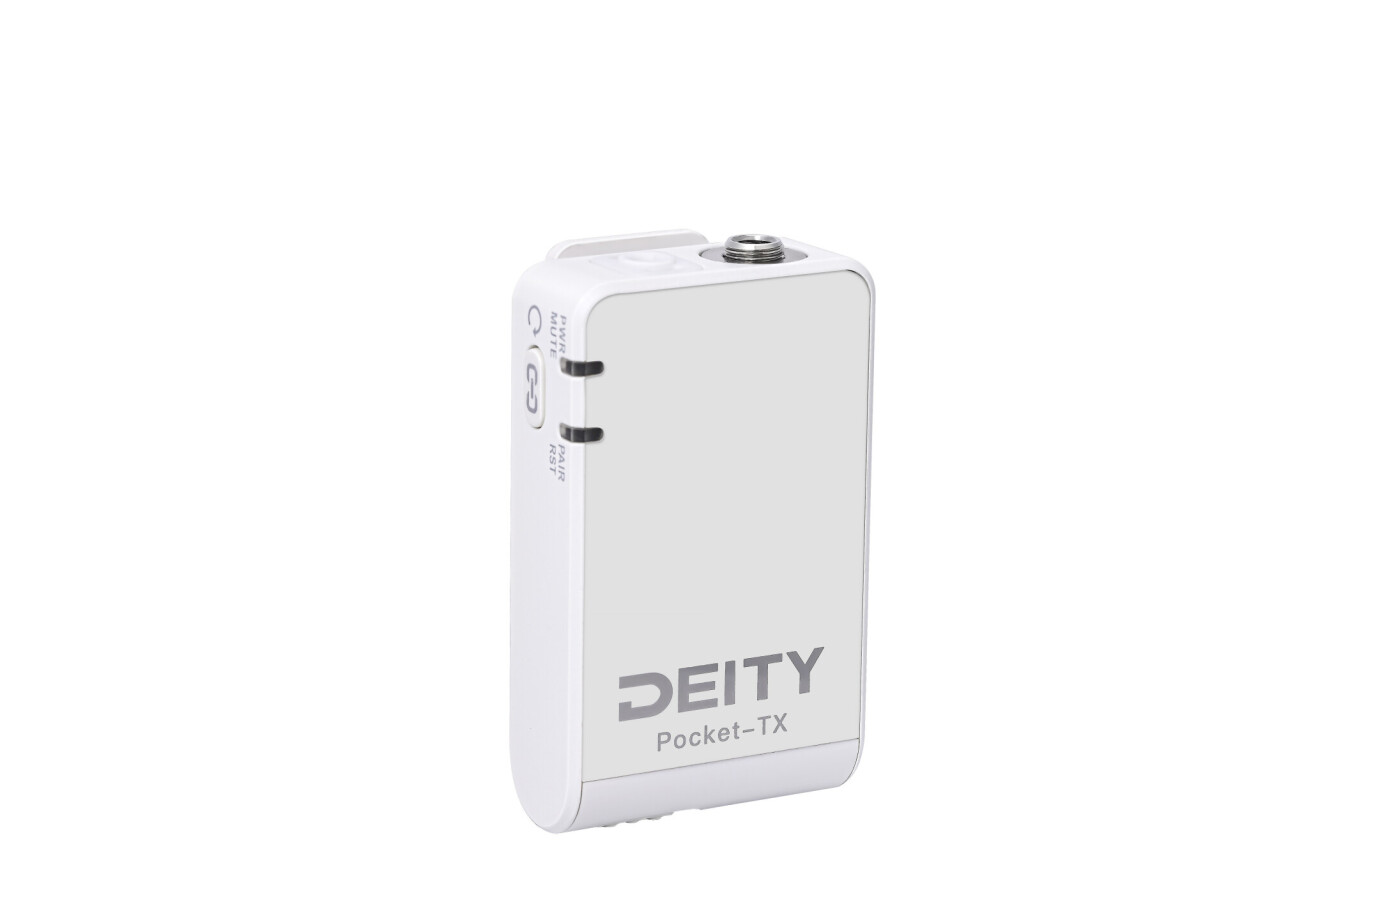 Vorschau: Deity Pocket Wireless, weiss